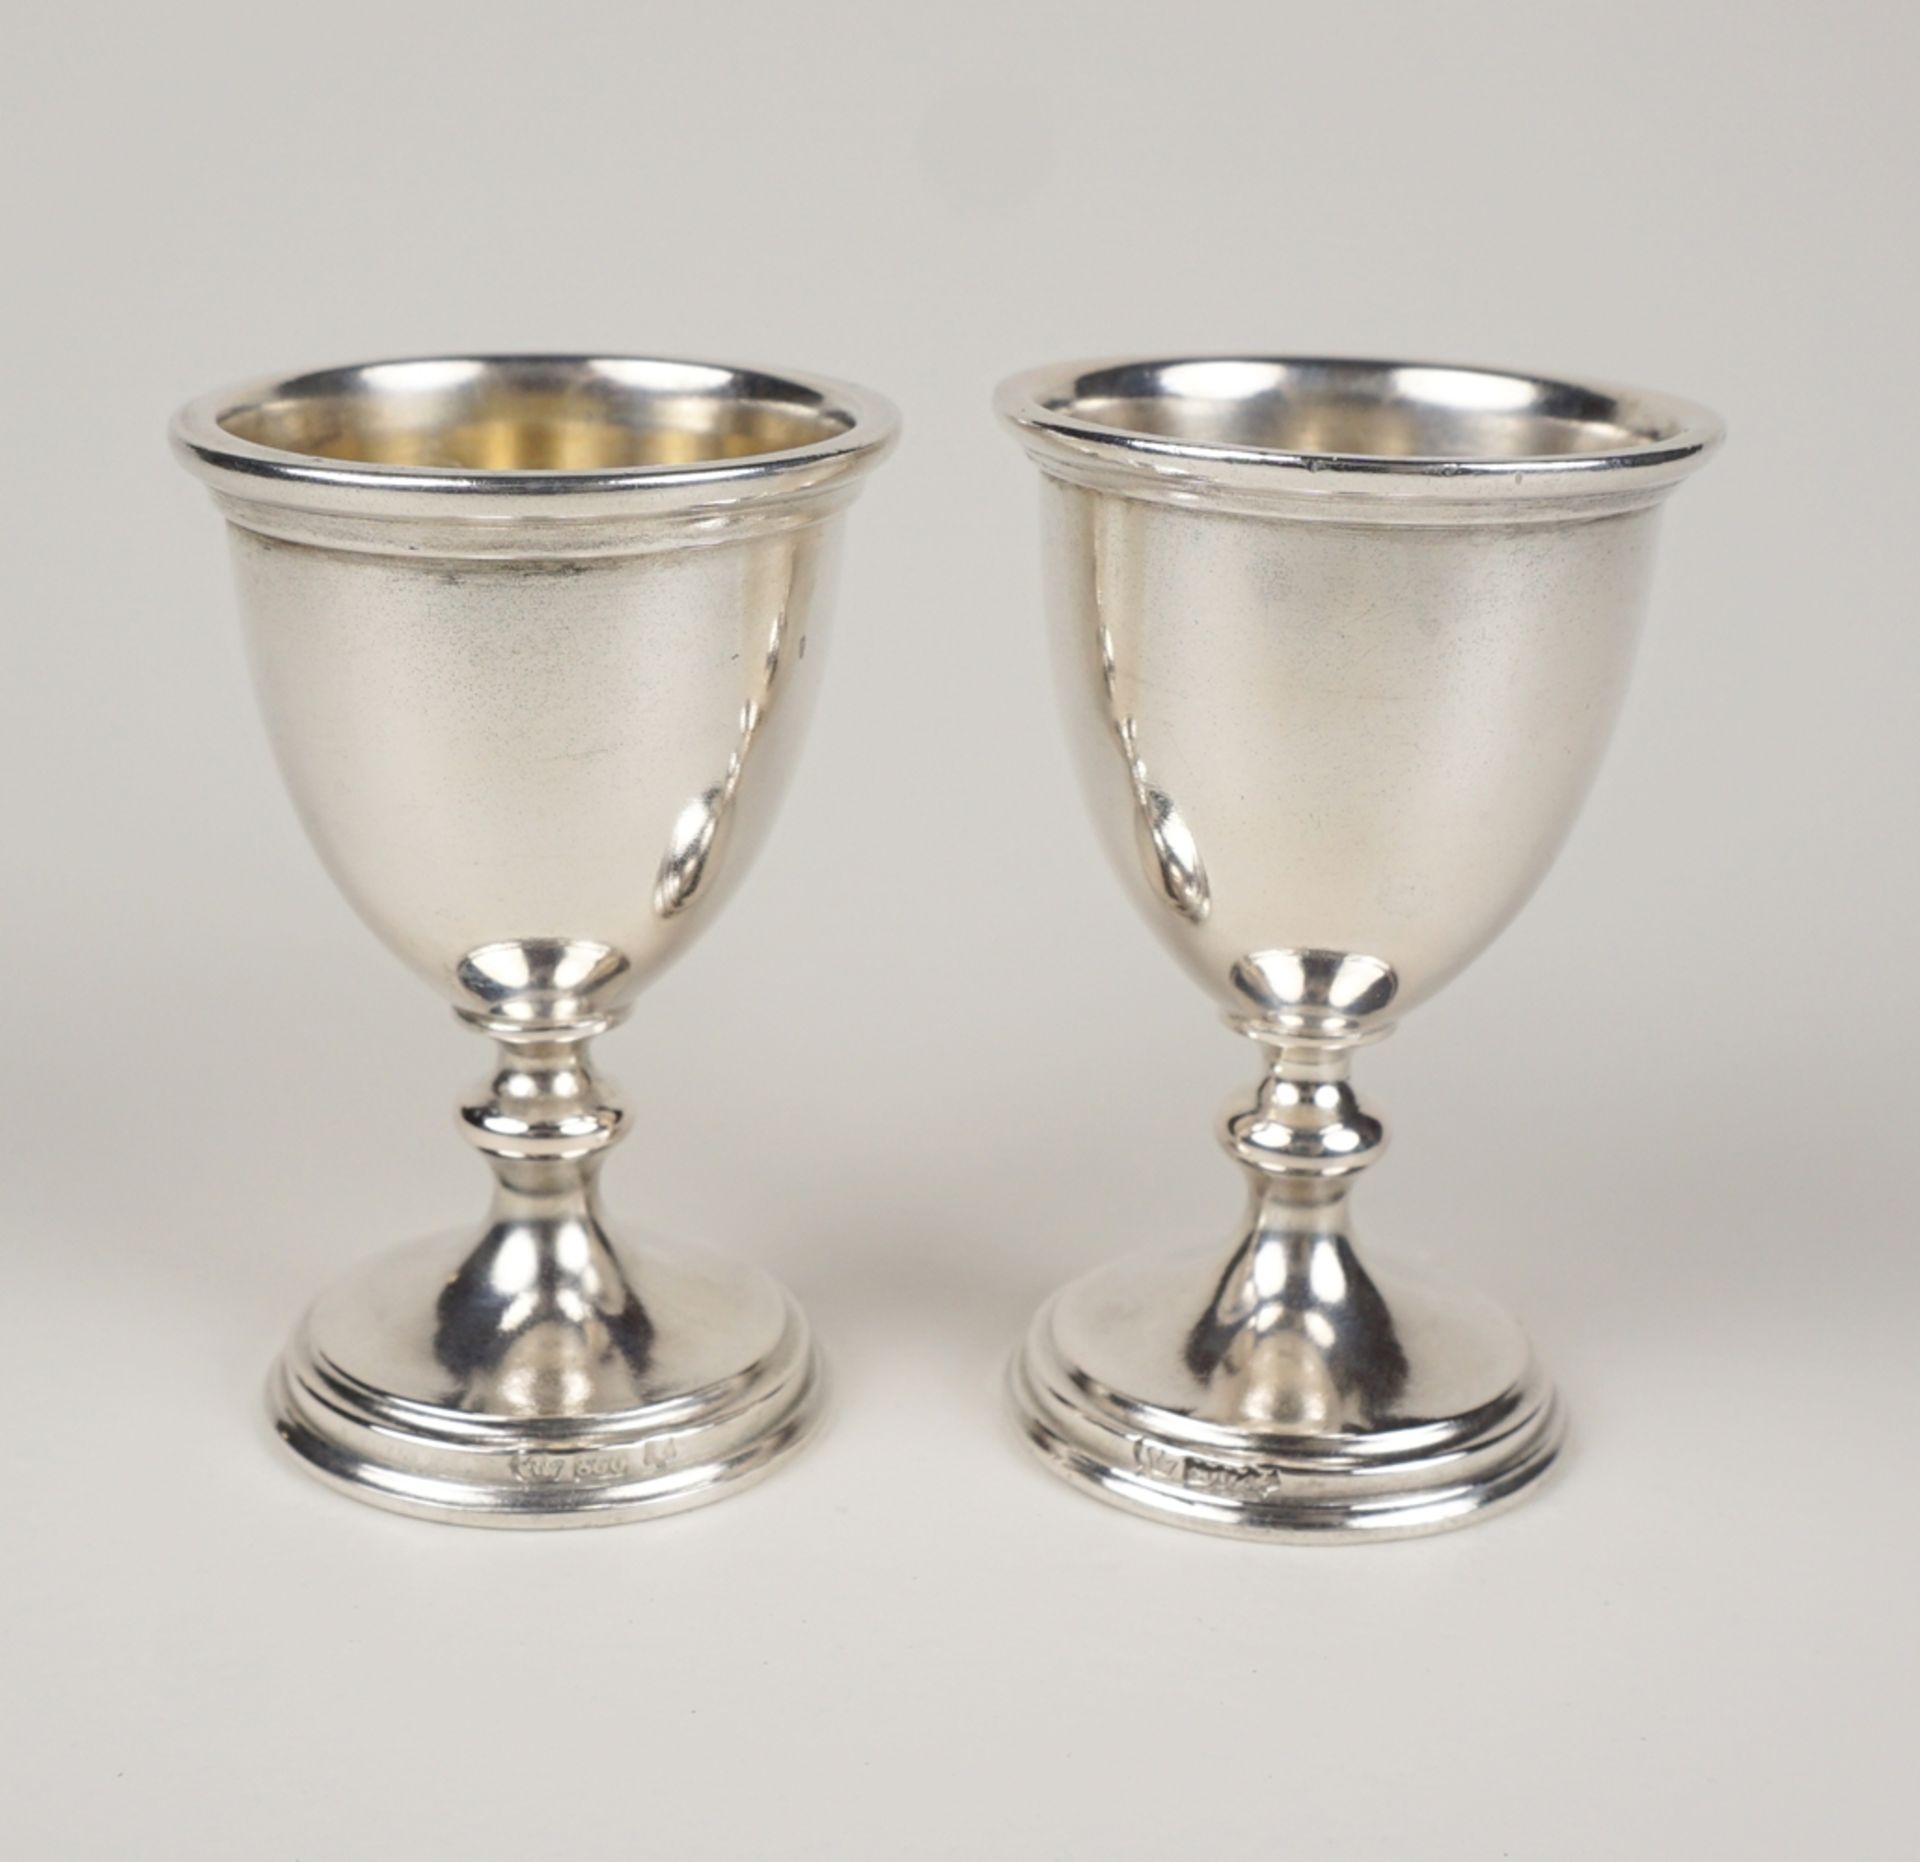 Paar Eierbecher, 800er Silber, um 1900 - Image 2 of 2